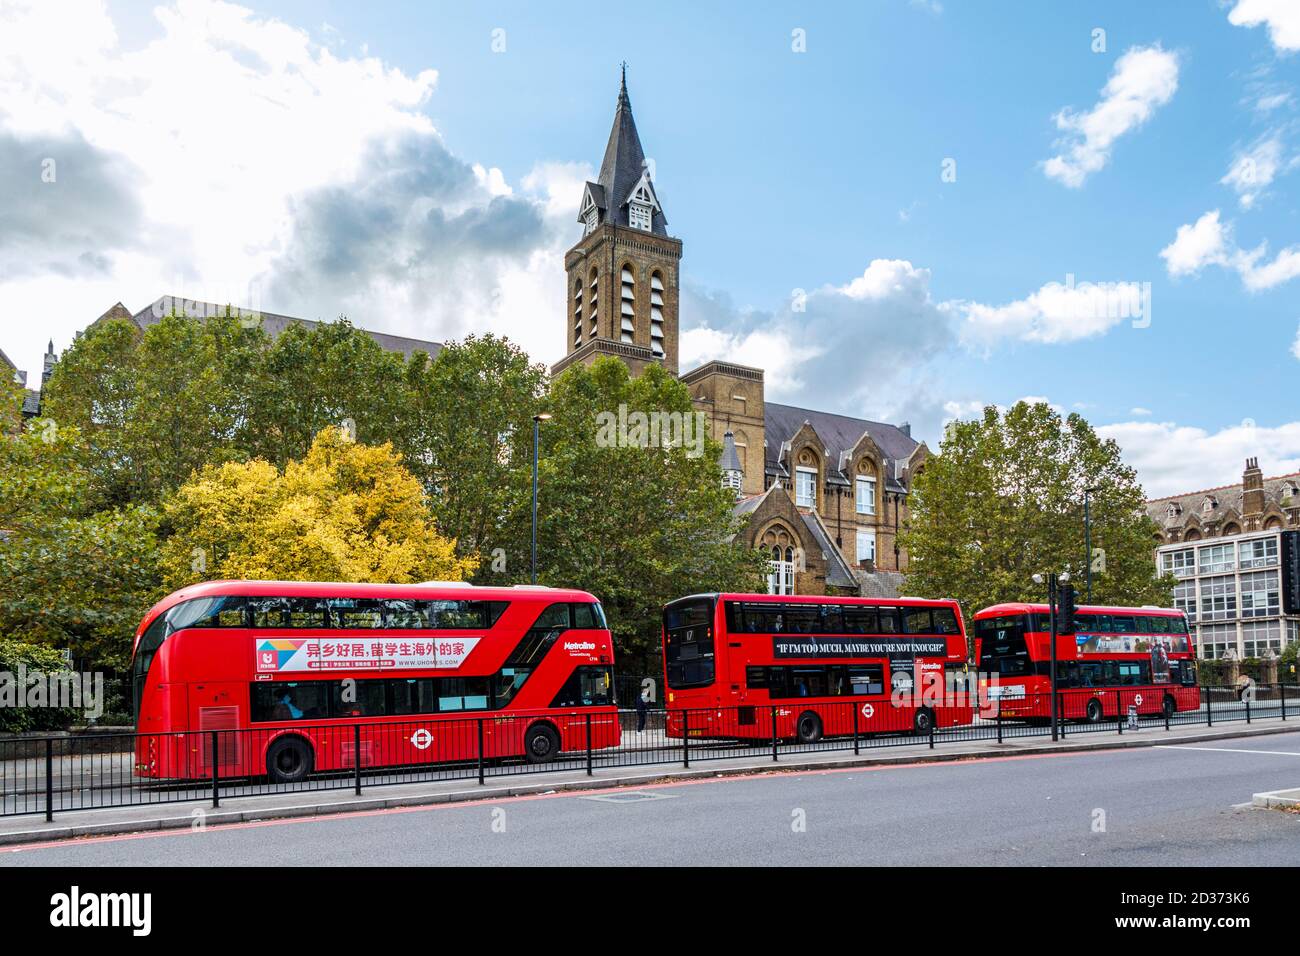 Una stazione degli autobus di tre autobus rossi su Archway Road, l'edificio conosciuto come 'l'infermeria di Holborn' dietro, Londra, Regno Unito Foto Stock